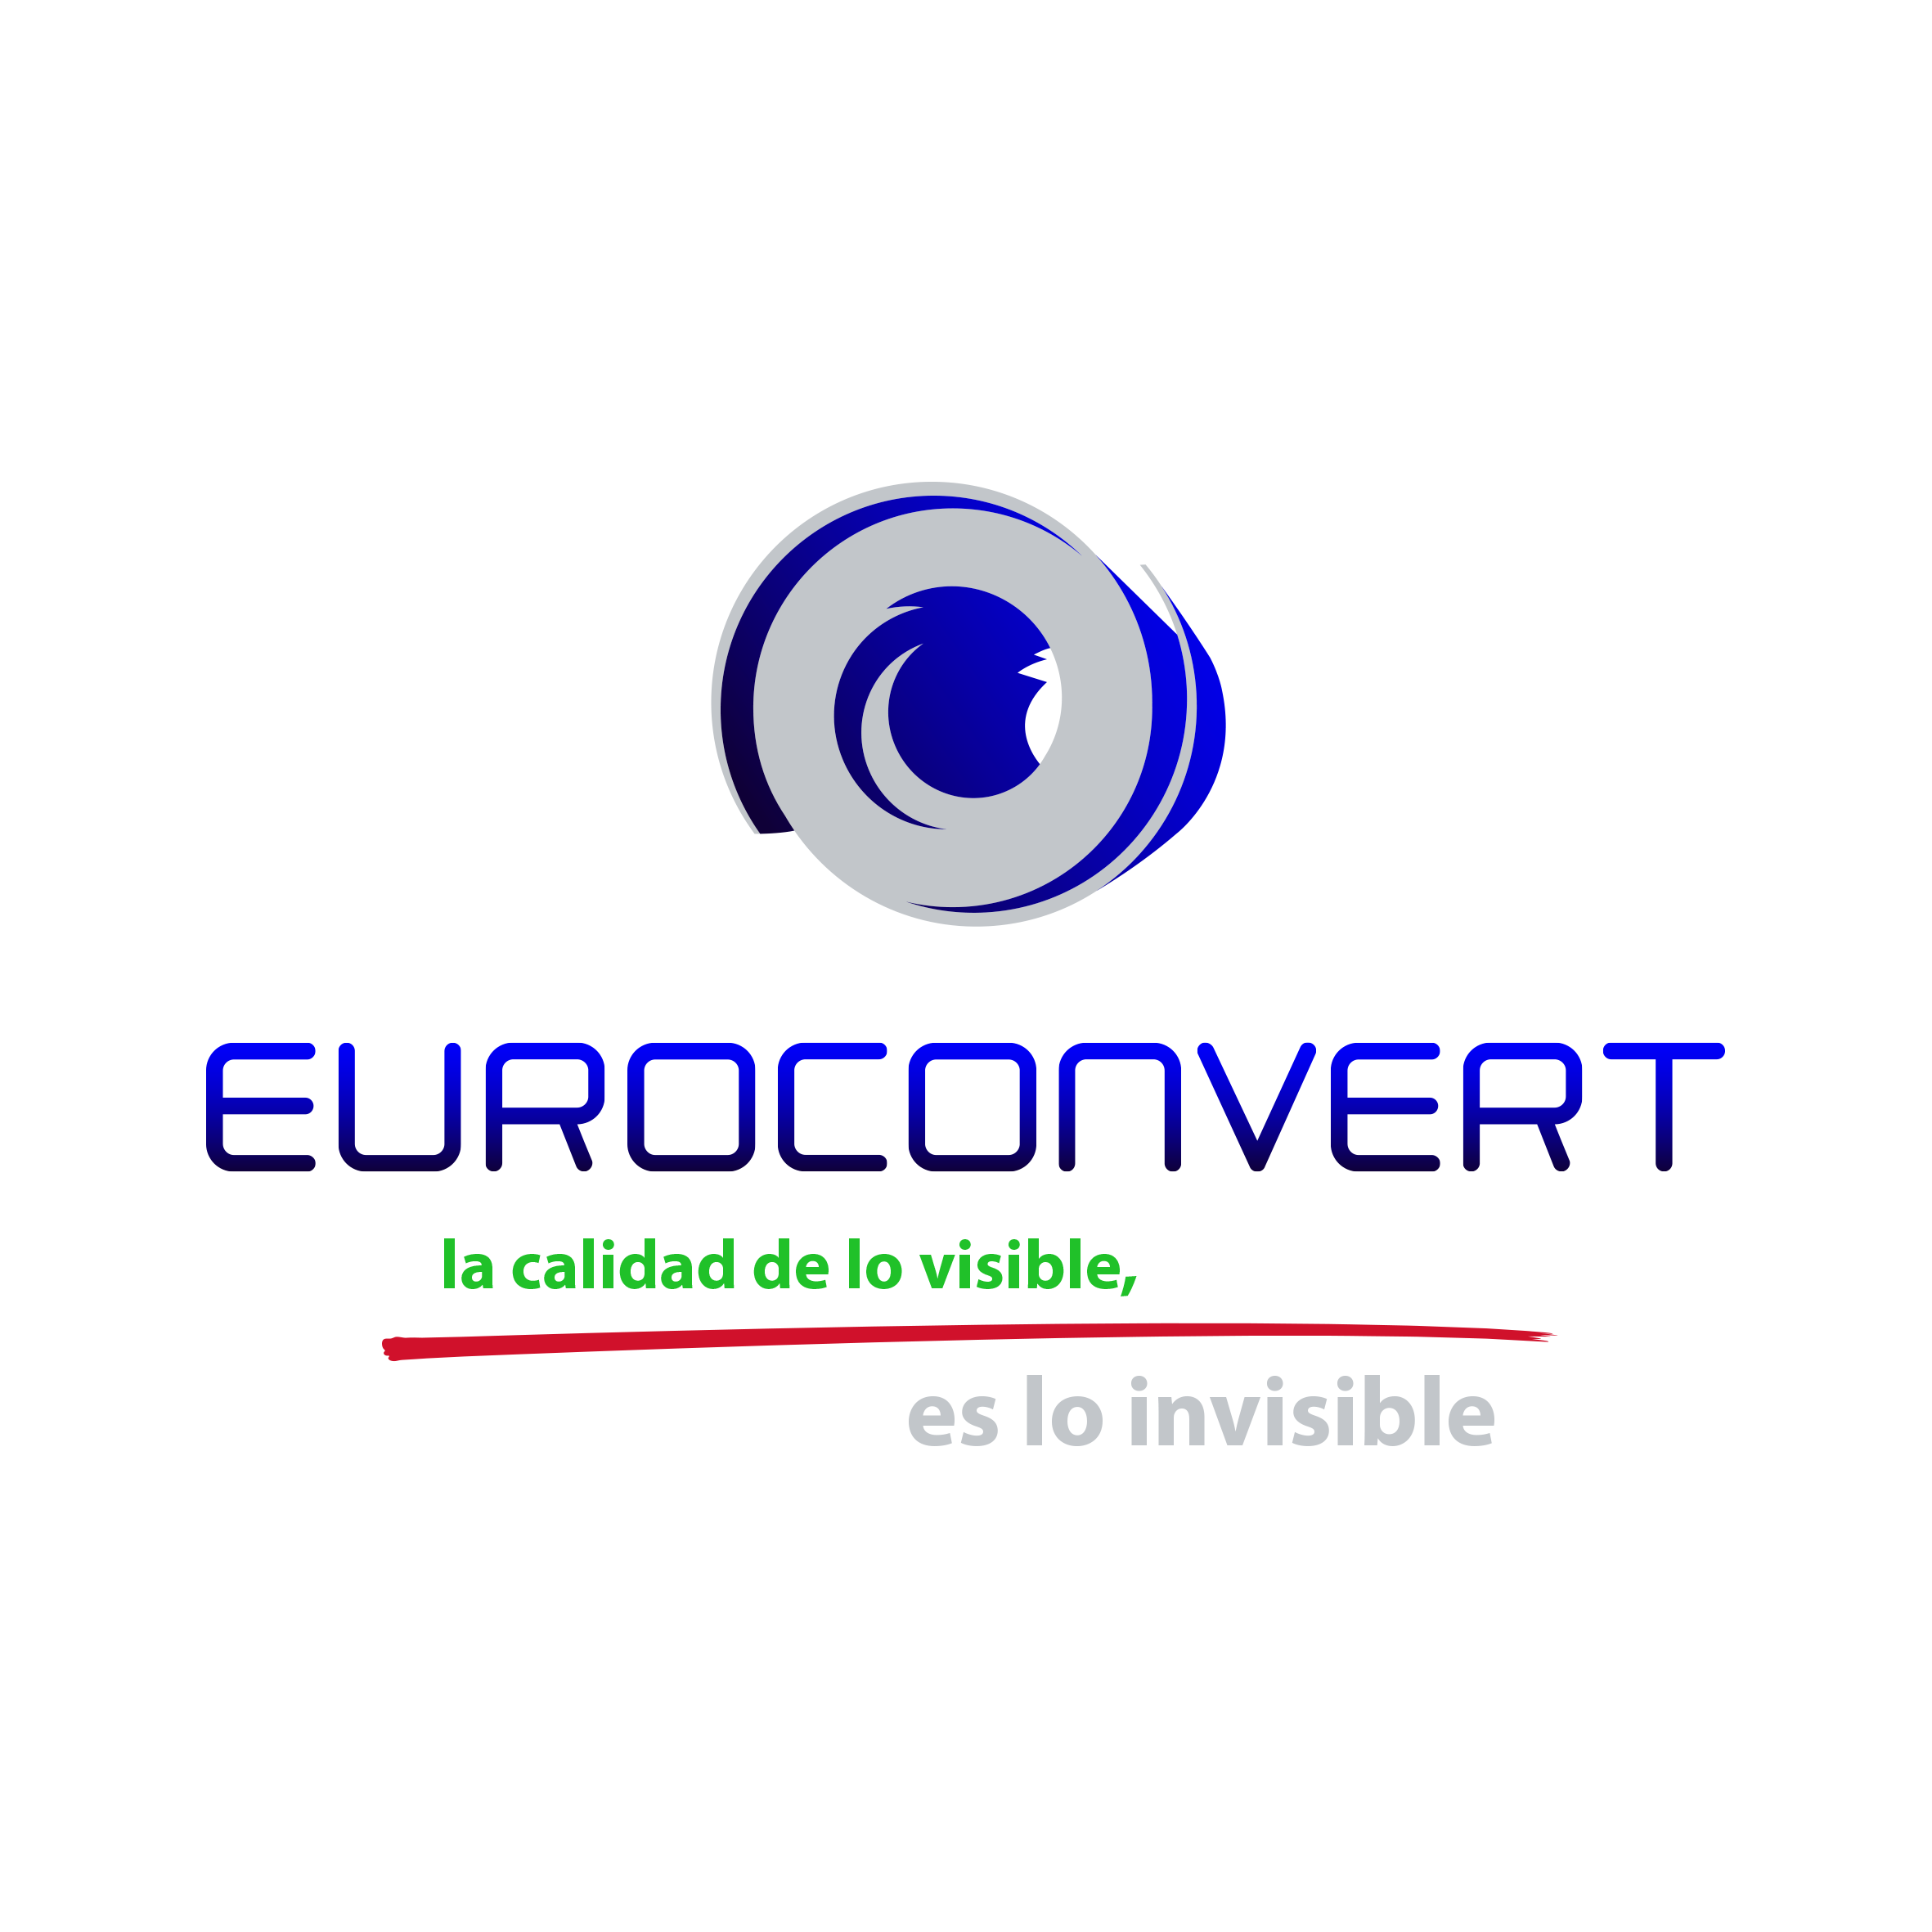 Euroconvert